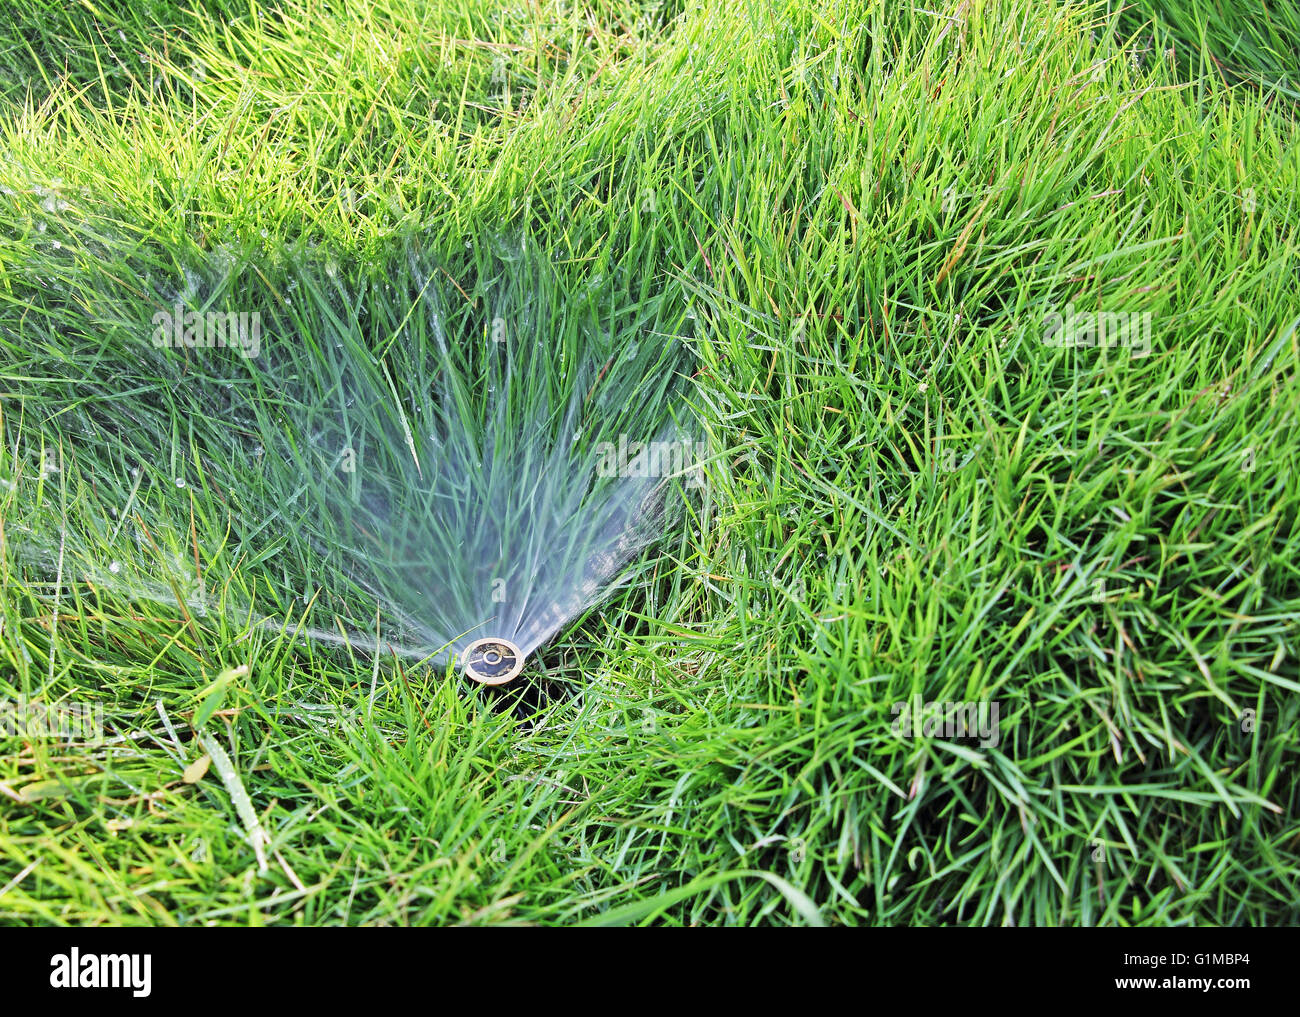 Vue de l'eau moyenne de petits gicleurs intégrés dans pelouse Banque D'Images